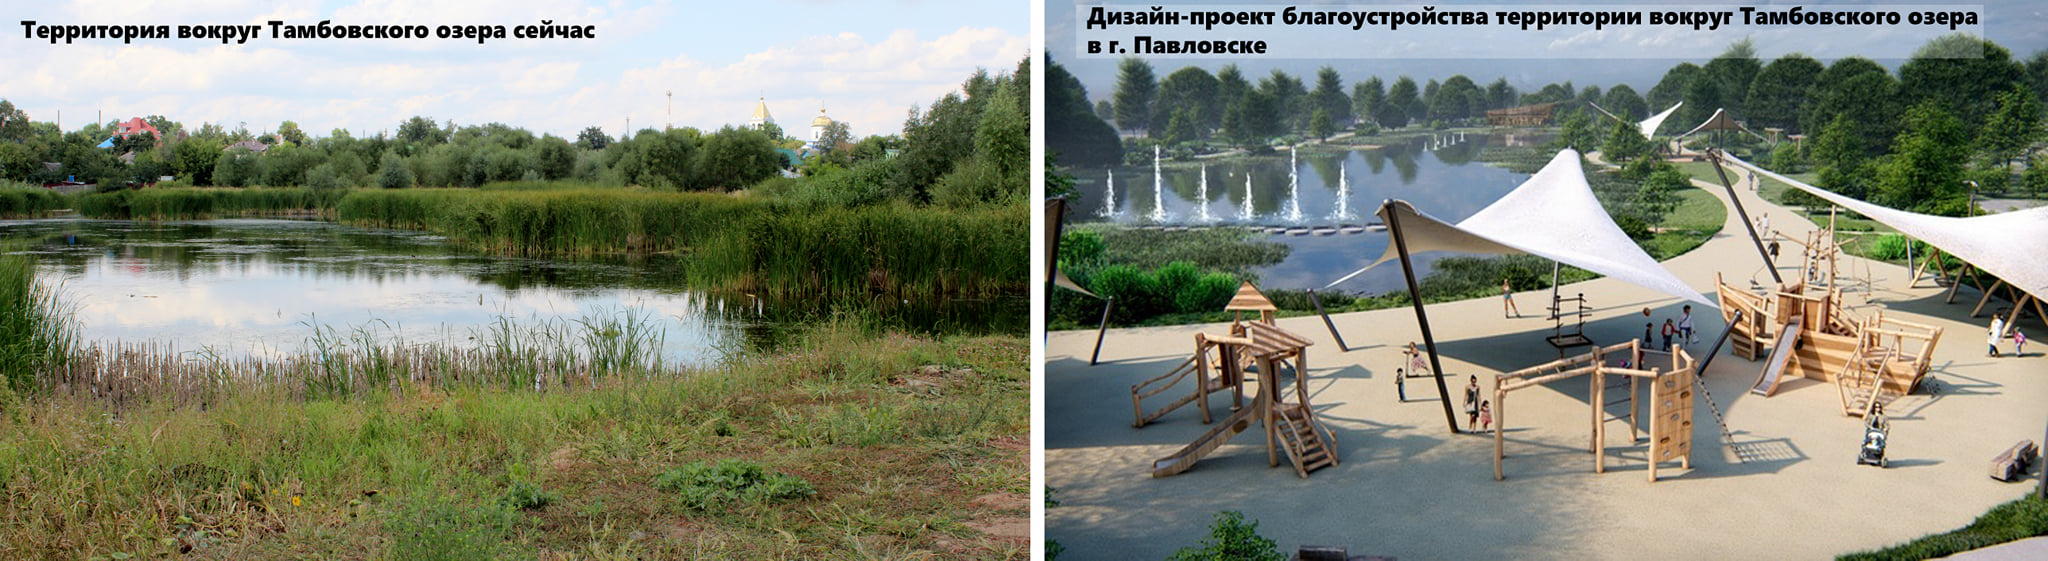 Подрядчик начал благоустраивать «Перламутровое озеро» в Павловске - фото 1